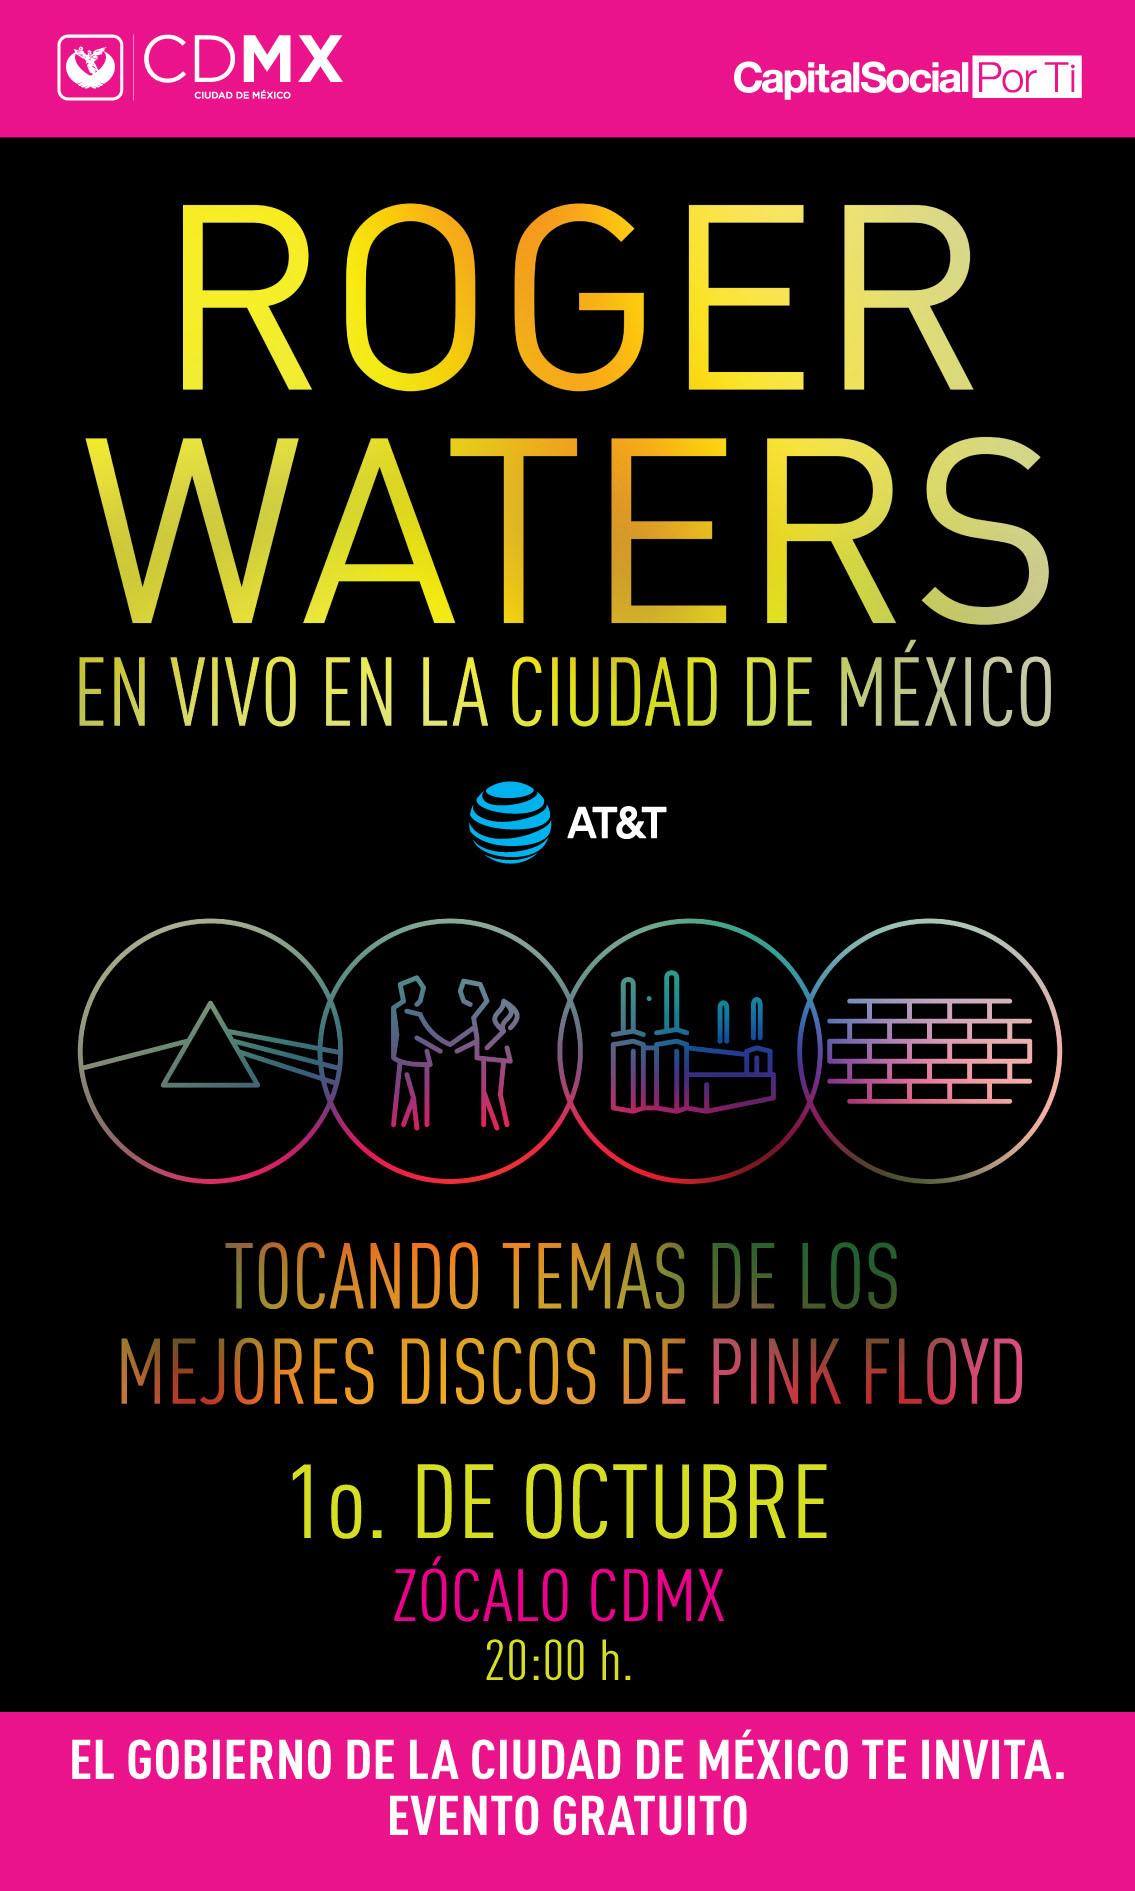 REQUISITOS PARA EL CONCIERTO GRATUITO DE ROGER WATERS EN LA CDMX